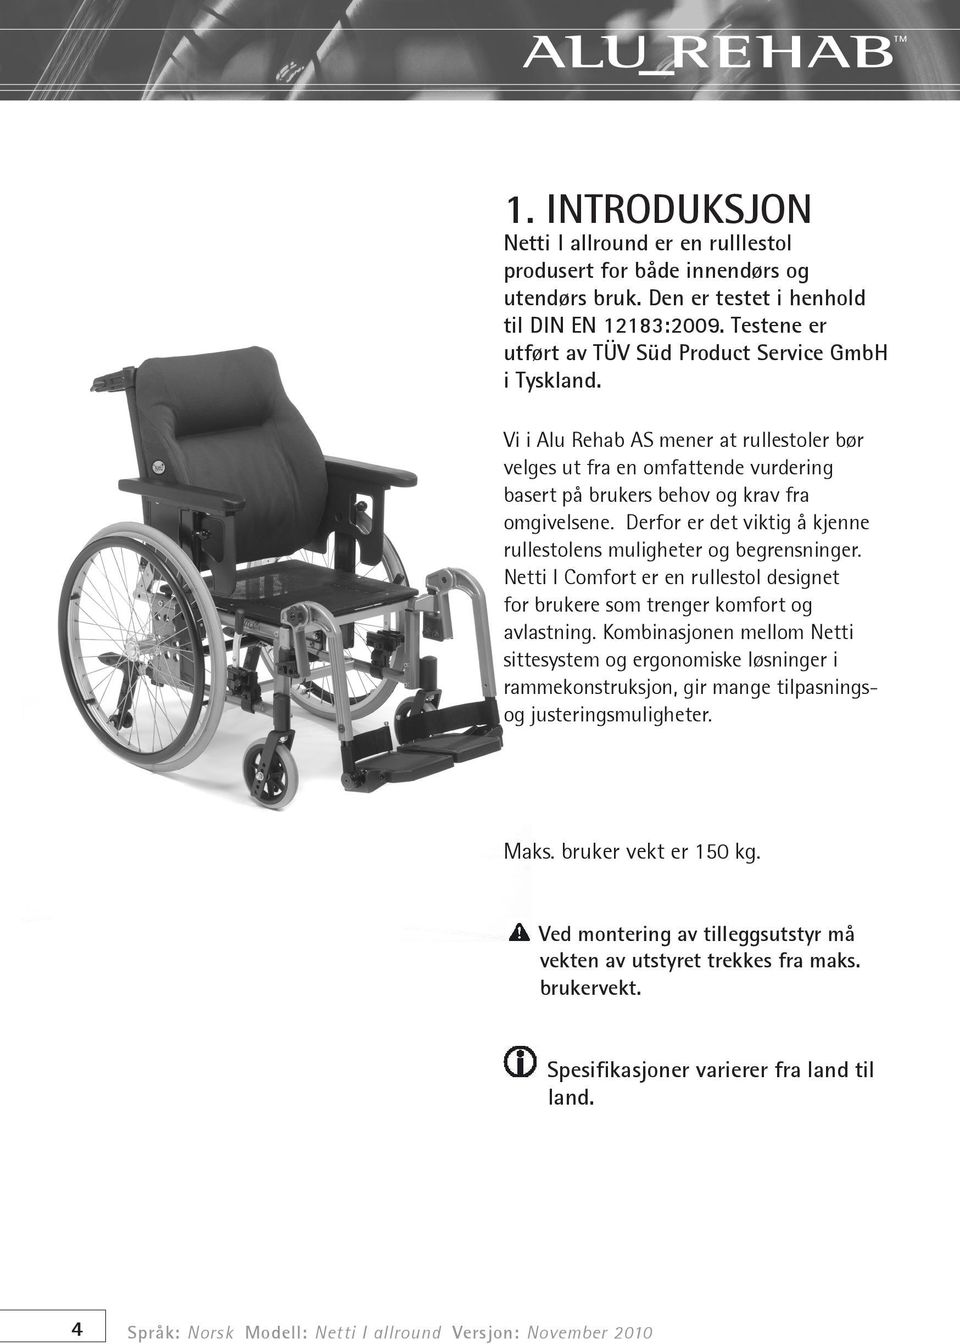 Derfor er det viktig å kjenne rullestolens muligheter og begrensninger. Netti I Comfort er en rullestol designet for brukere som trenger komfort og avlastning.